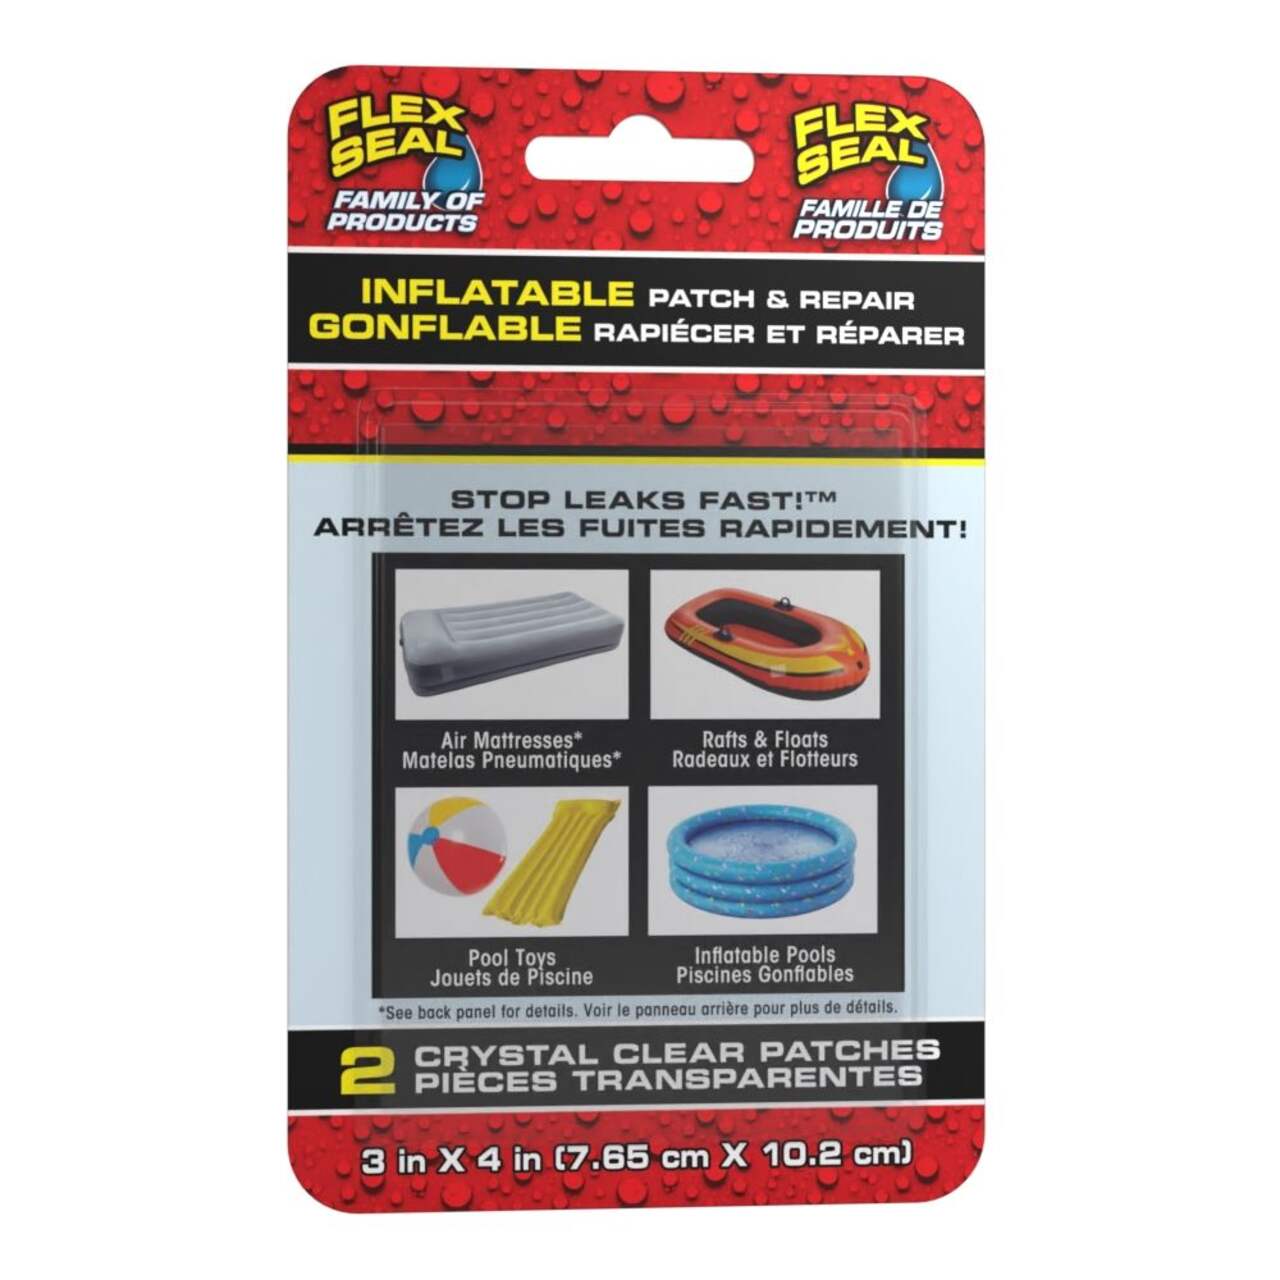 Trousse de réparation caoutchoutée Flex Seal pour objet gonflable